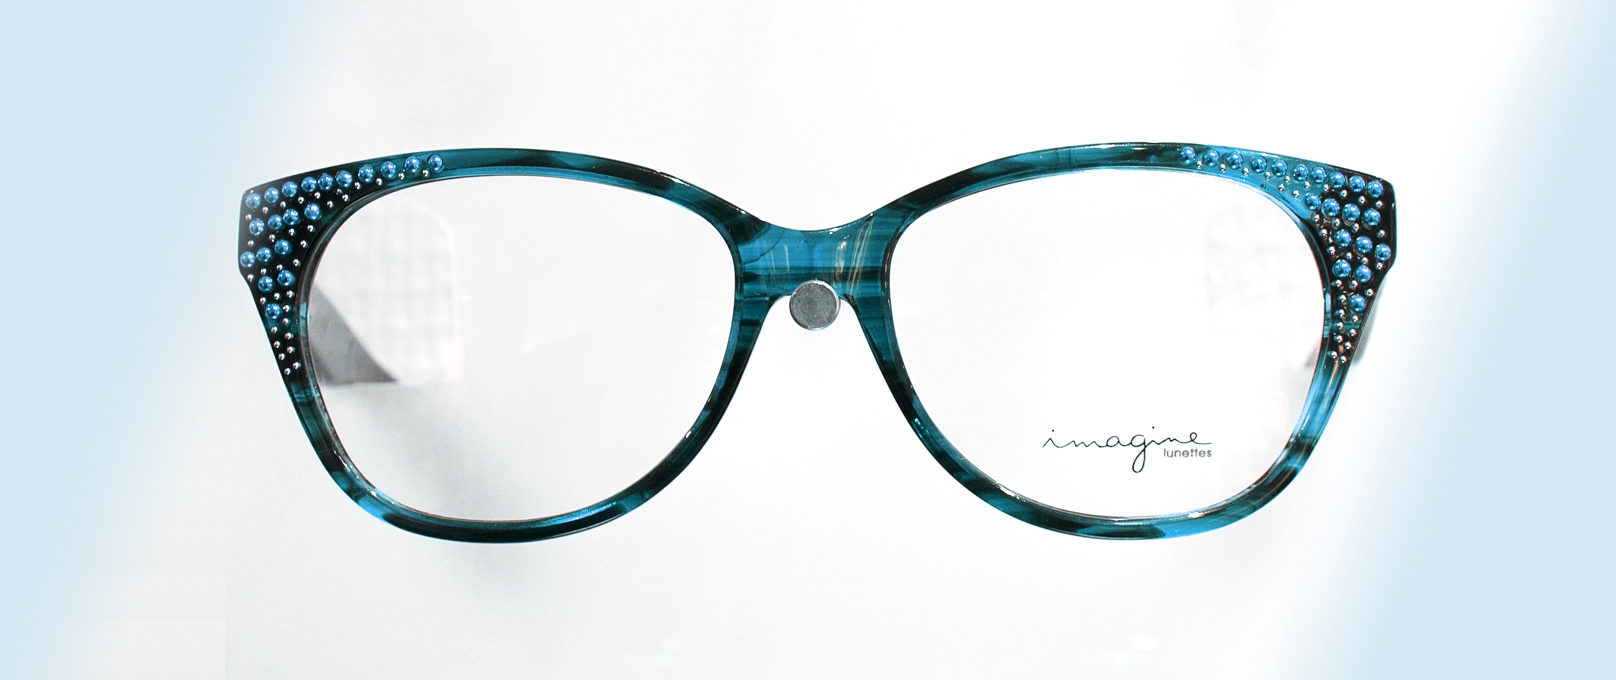 Optique : les lunettes de vue pour y voir plus clair au quotidien